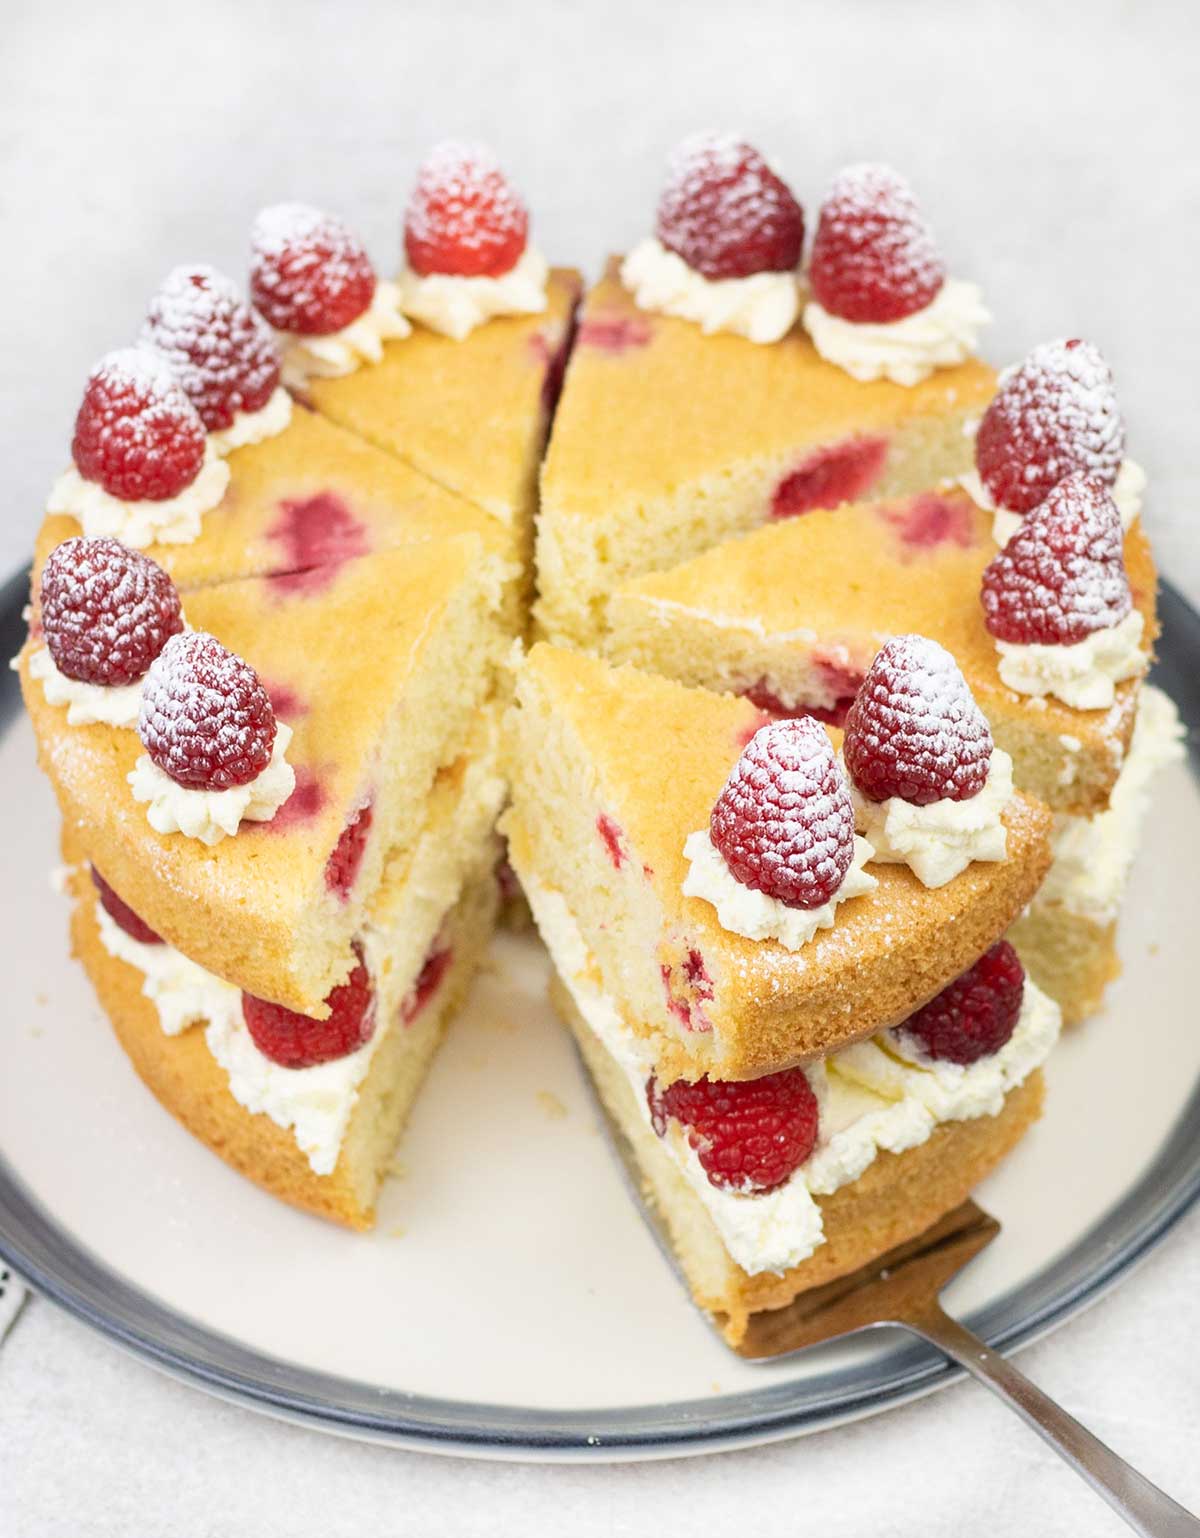 A slice of raspberry sponge cake.